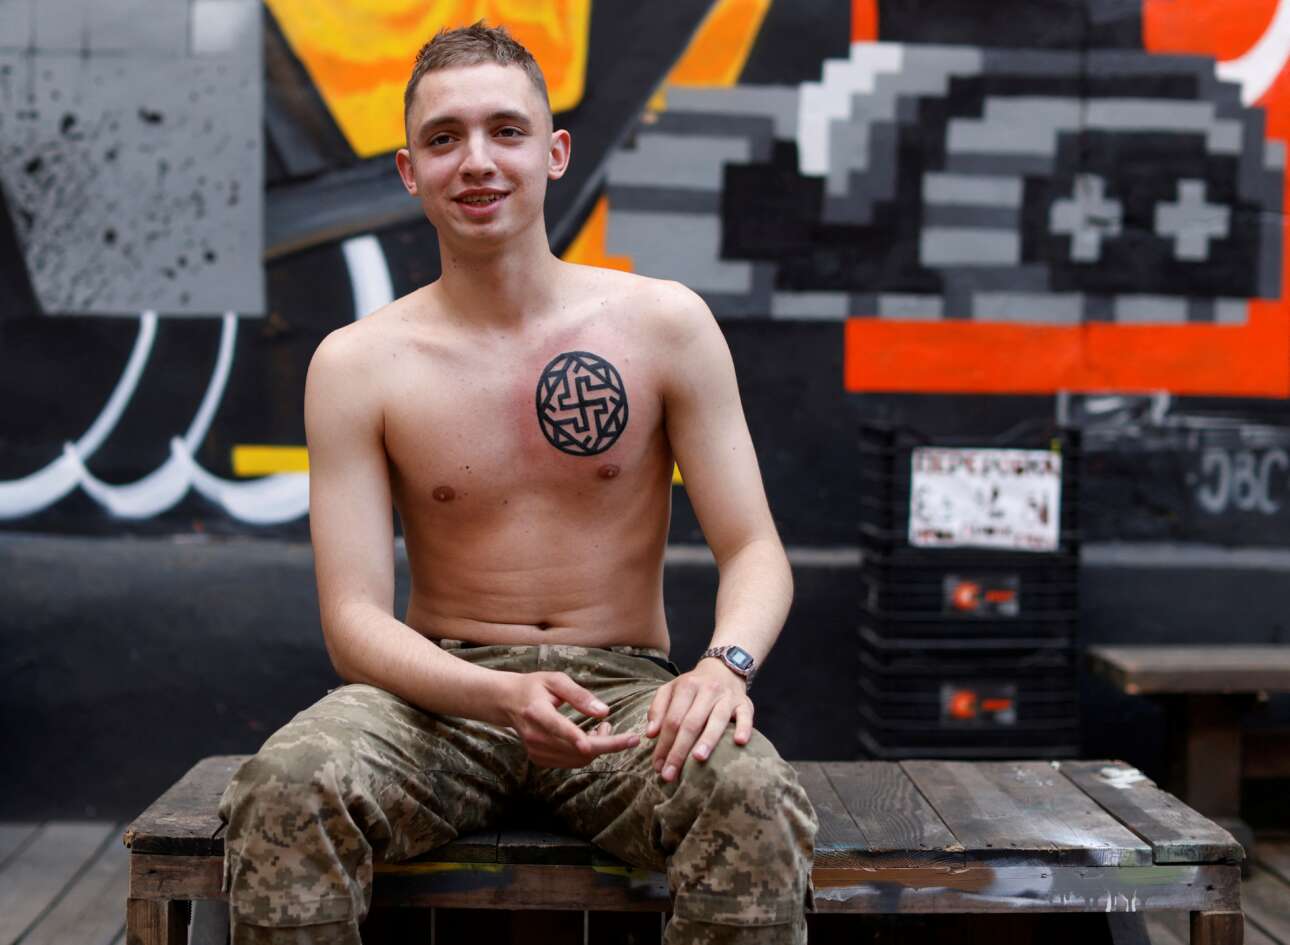 Στο Κίεβο οι Ουκρανοί έκαναν έναν «μαραθώνιο των τατουάζ» με σκοπό να συγκεντρώσουν λεφτά για τον στρατό τους: ο εικονιζόμενος νεαρός σταμπάρισε το στήθος του με αυτό το σύμβολο – το Reuters το χαρακτήρισε «παλιό σλαβικό» καθώς δεν είναι παλαιογερμανική σβάστικα, πόσο μάλλον αρχαιοελληνικό γαμμάδιον